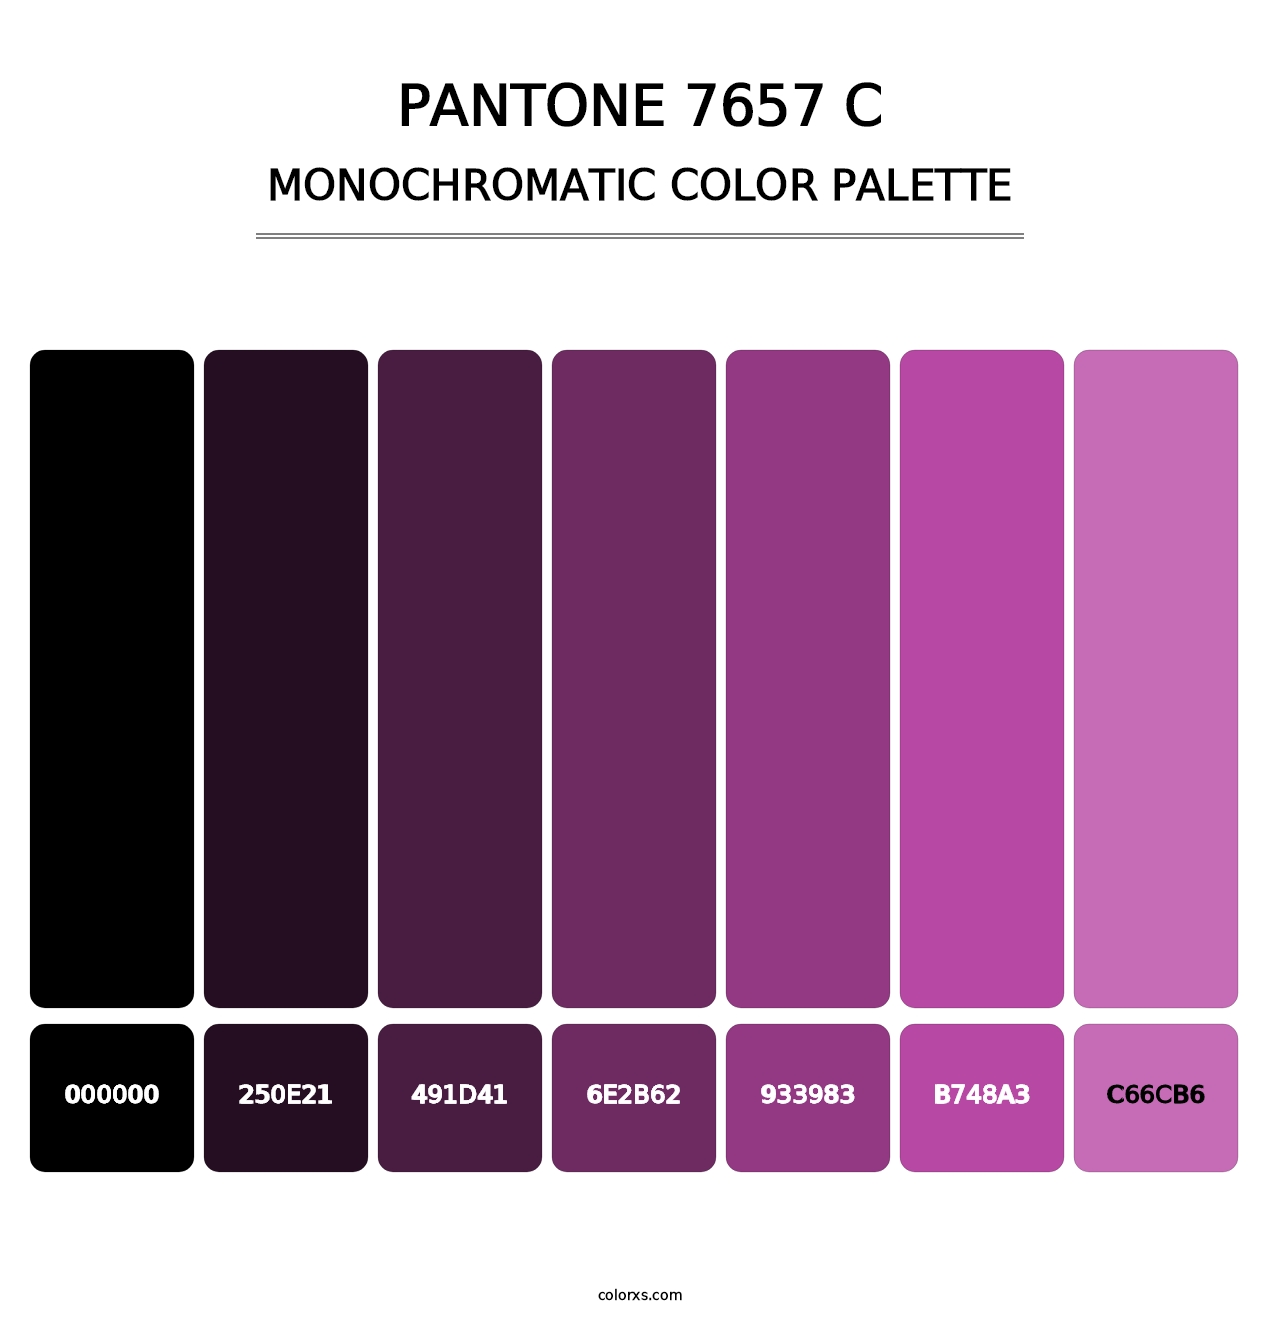 PANTONE 7657 C - Monochromatic Color Palette